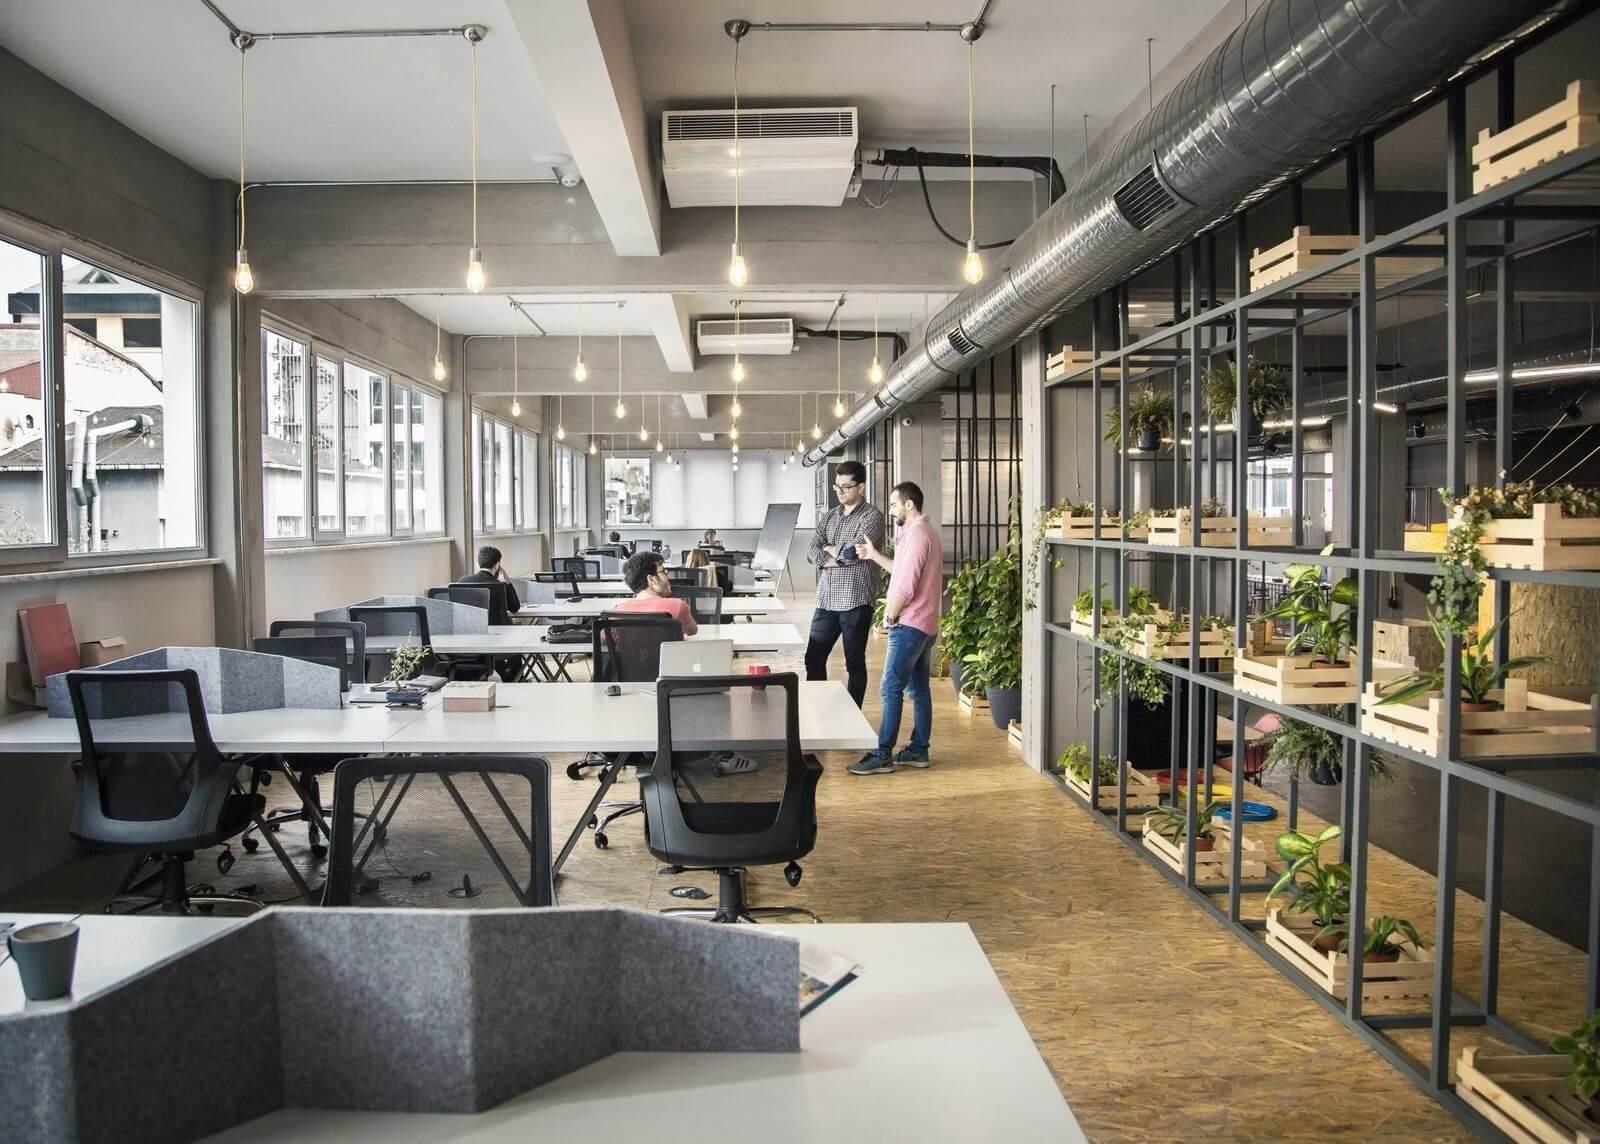 Thiết kế nội thất cho văn phòng giúp thúc đẩy năng suất lao động, khơi nguồn cảm hứng làm việc.